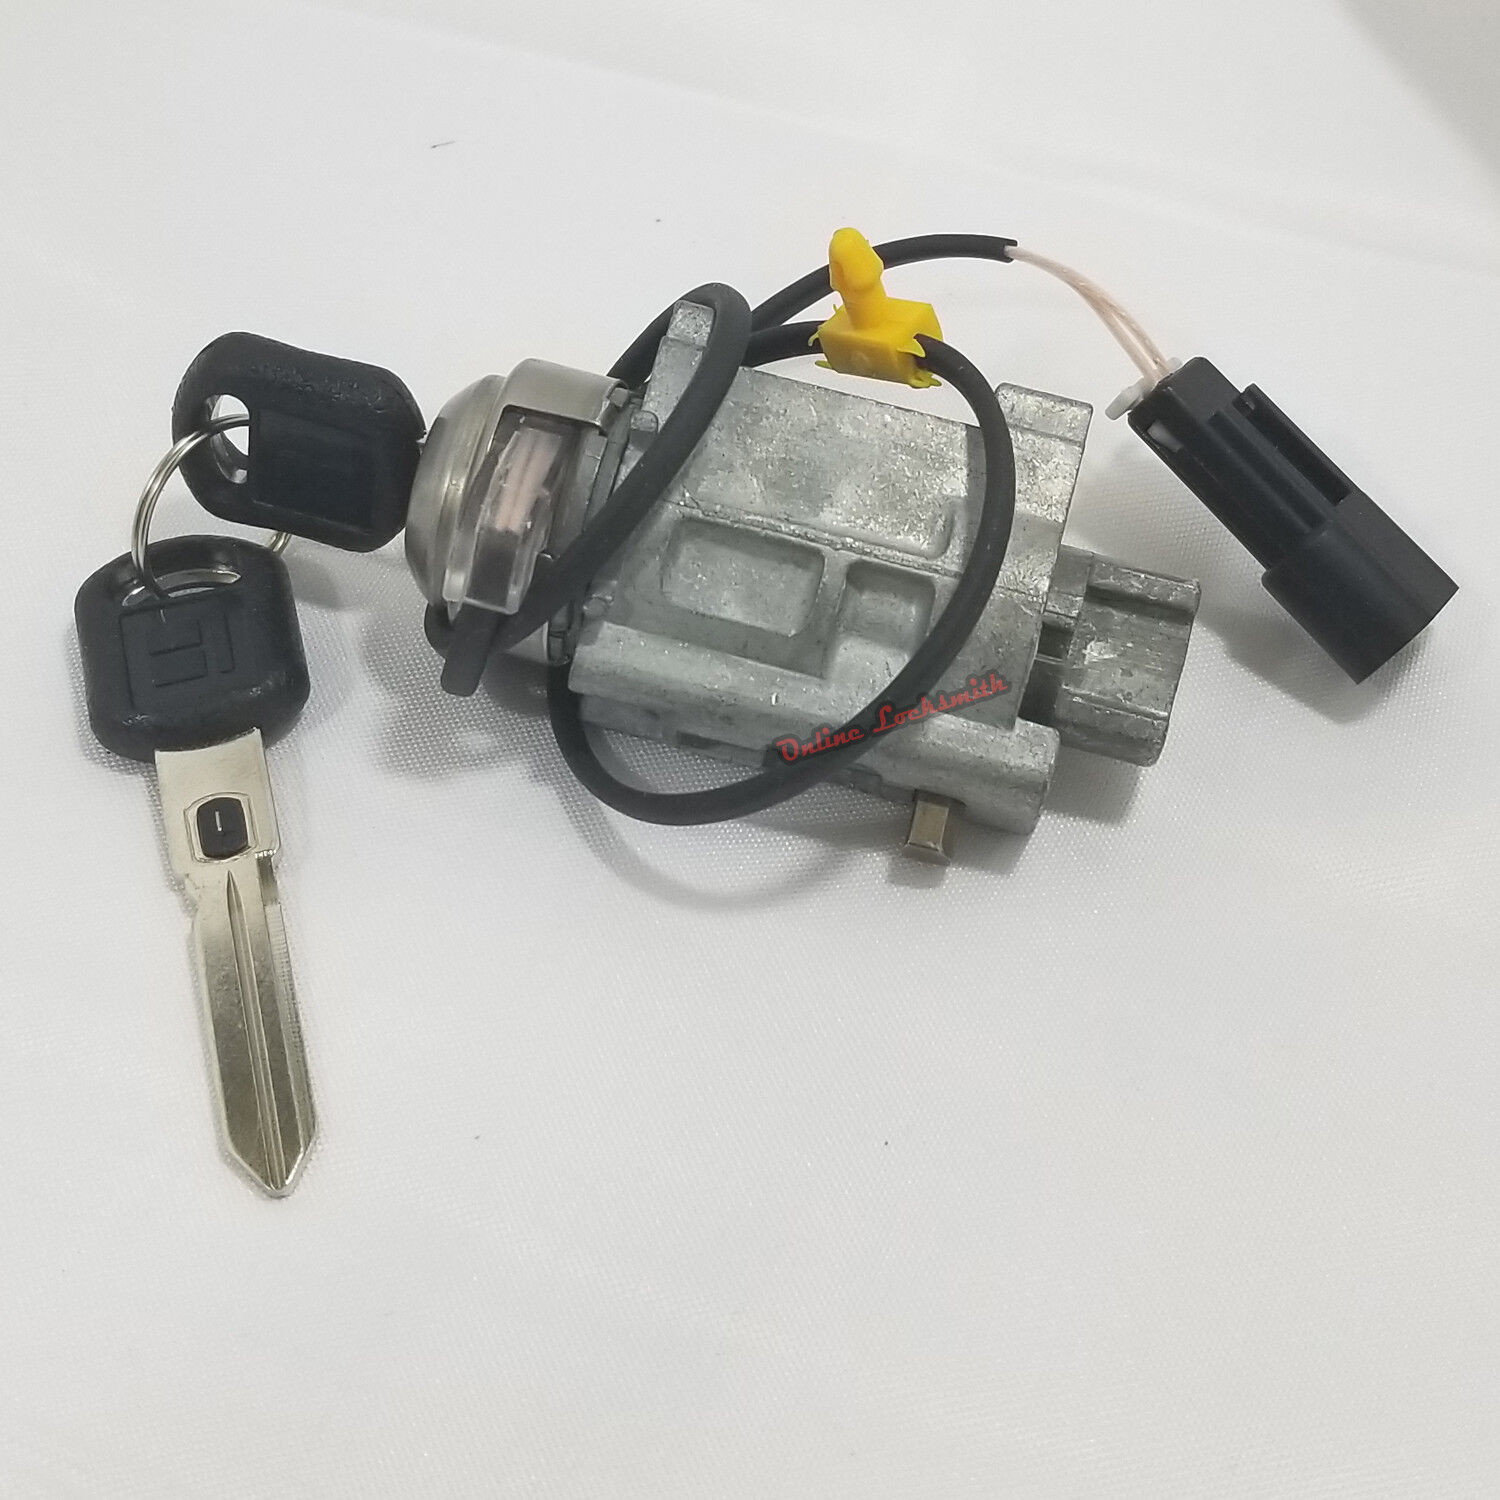 OEM Ignition Switch Cylinder For Chevrolet Corvette 97-04 w/ Keys - Choose Value